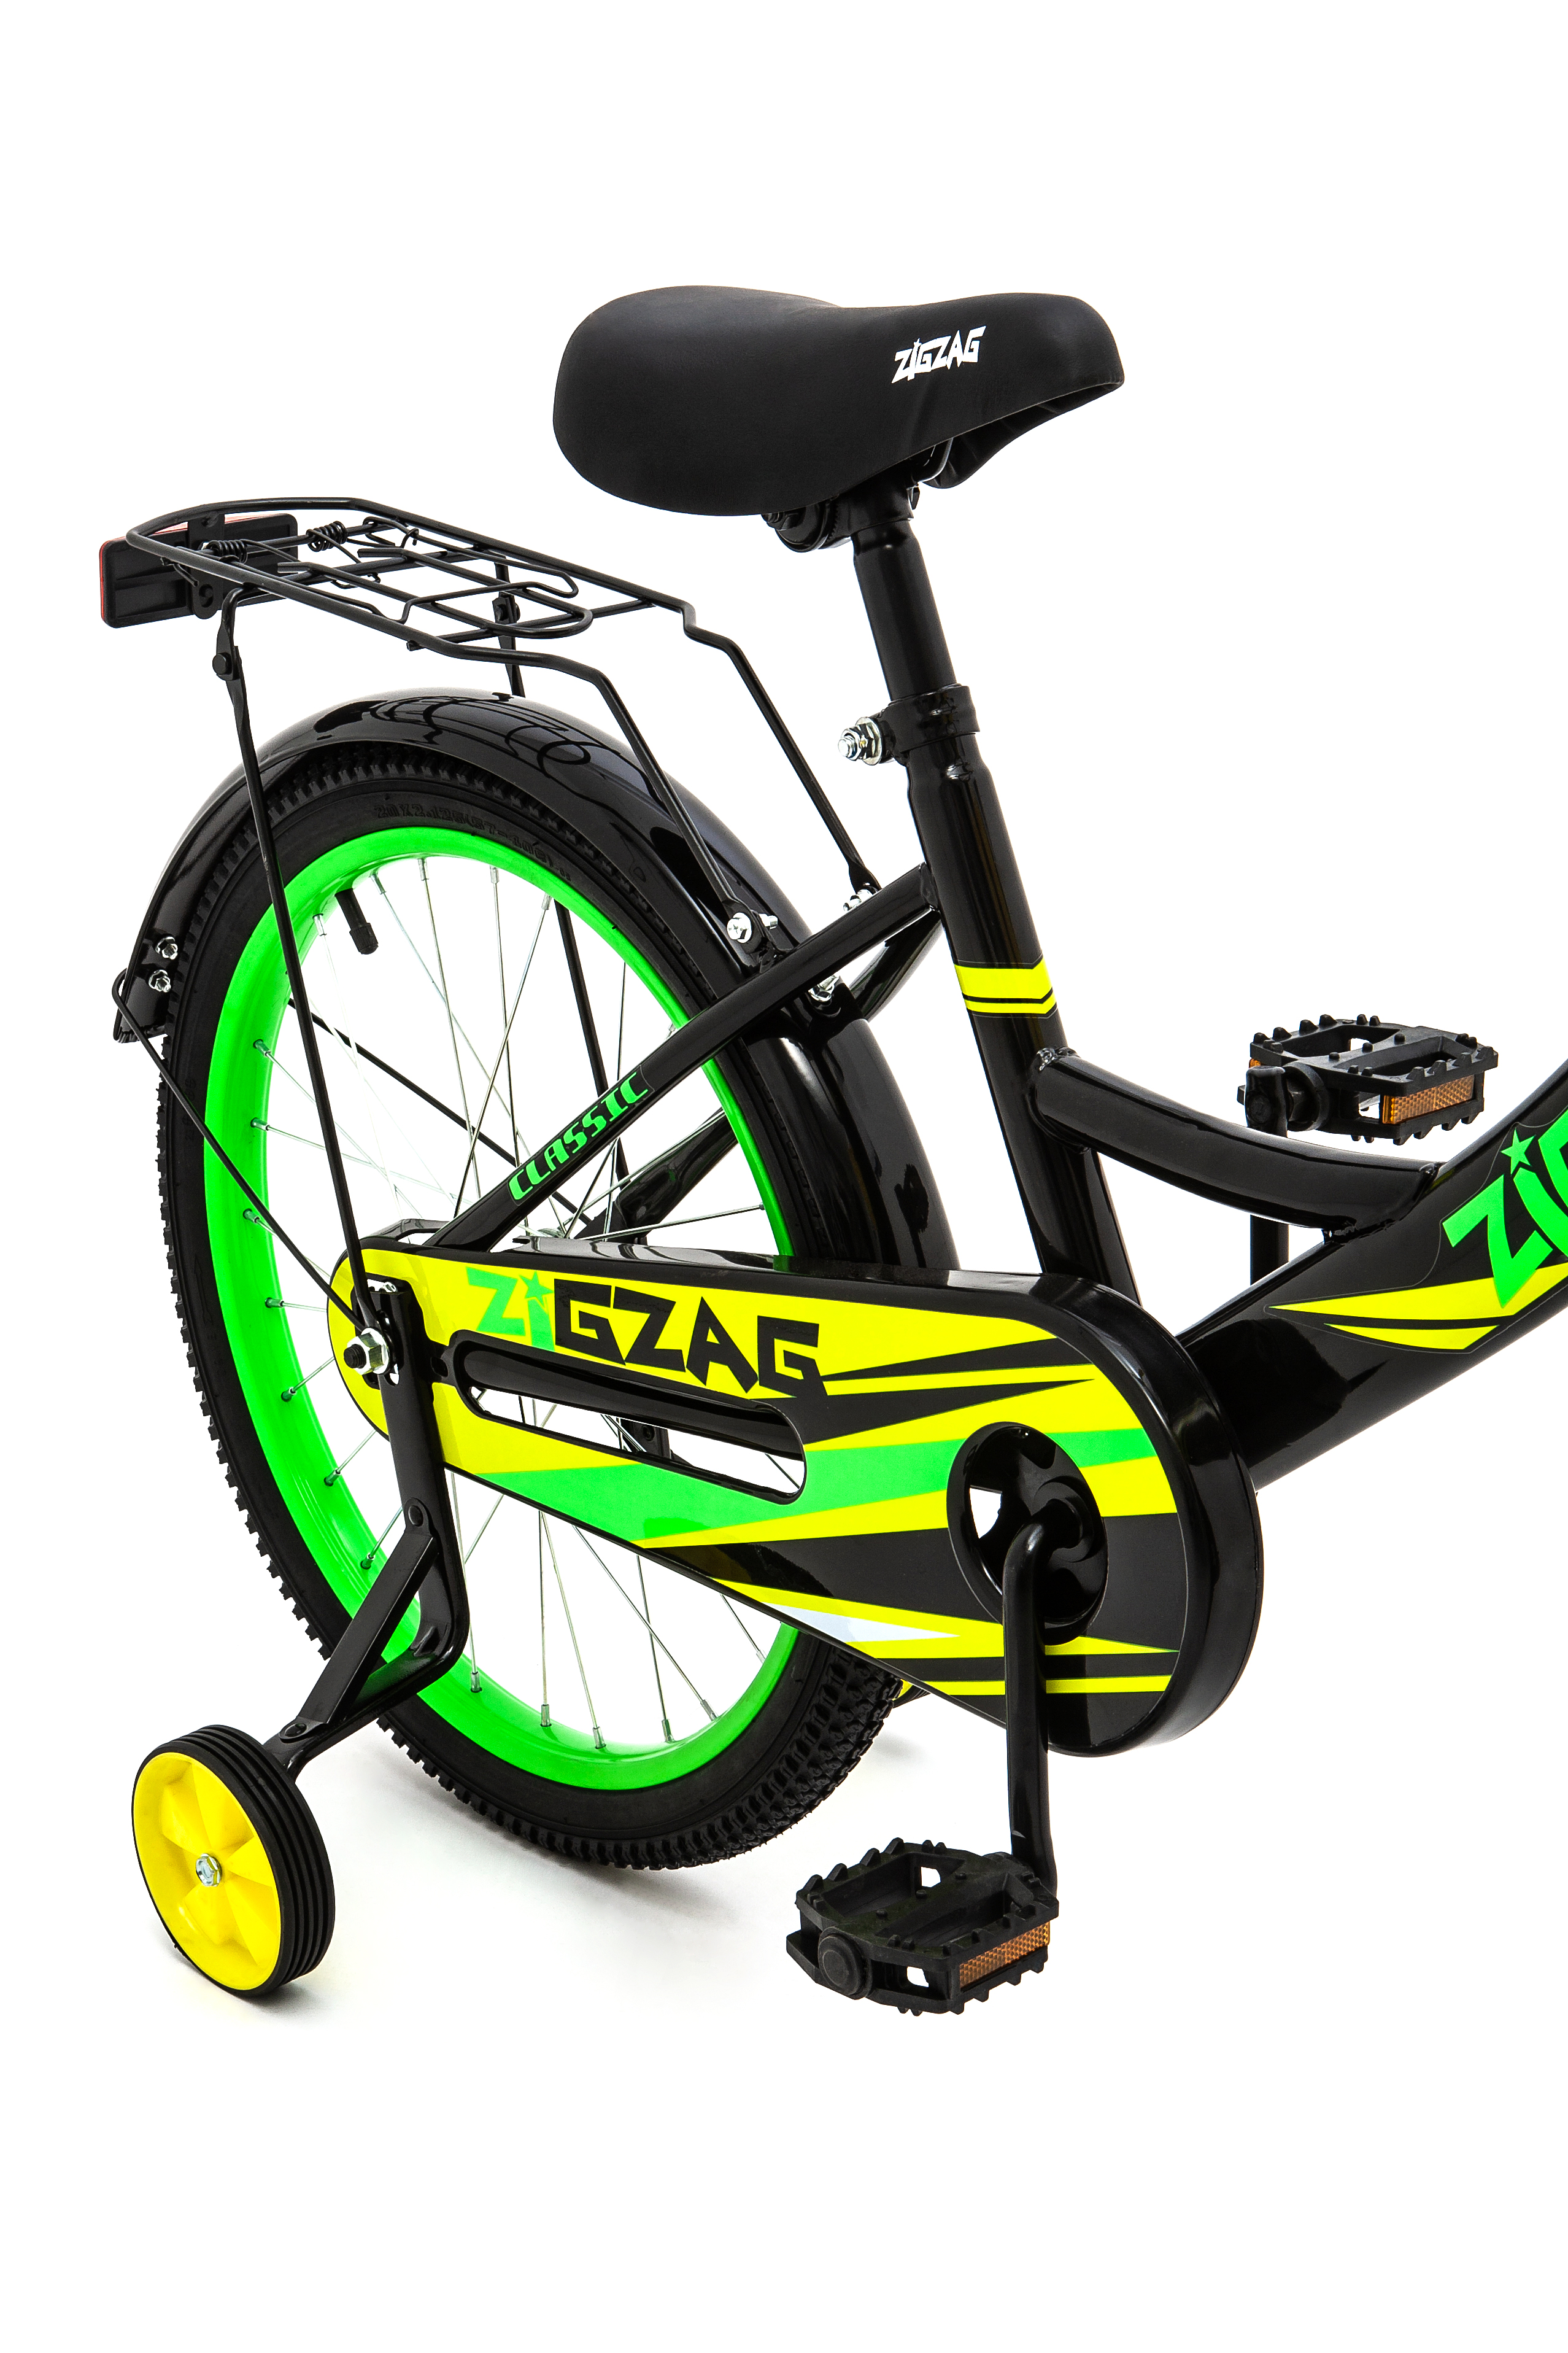 Велосипед ZigZag CLASSIC черный желтый зеленый 20 дюймов - фото 5